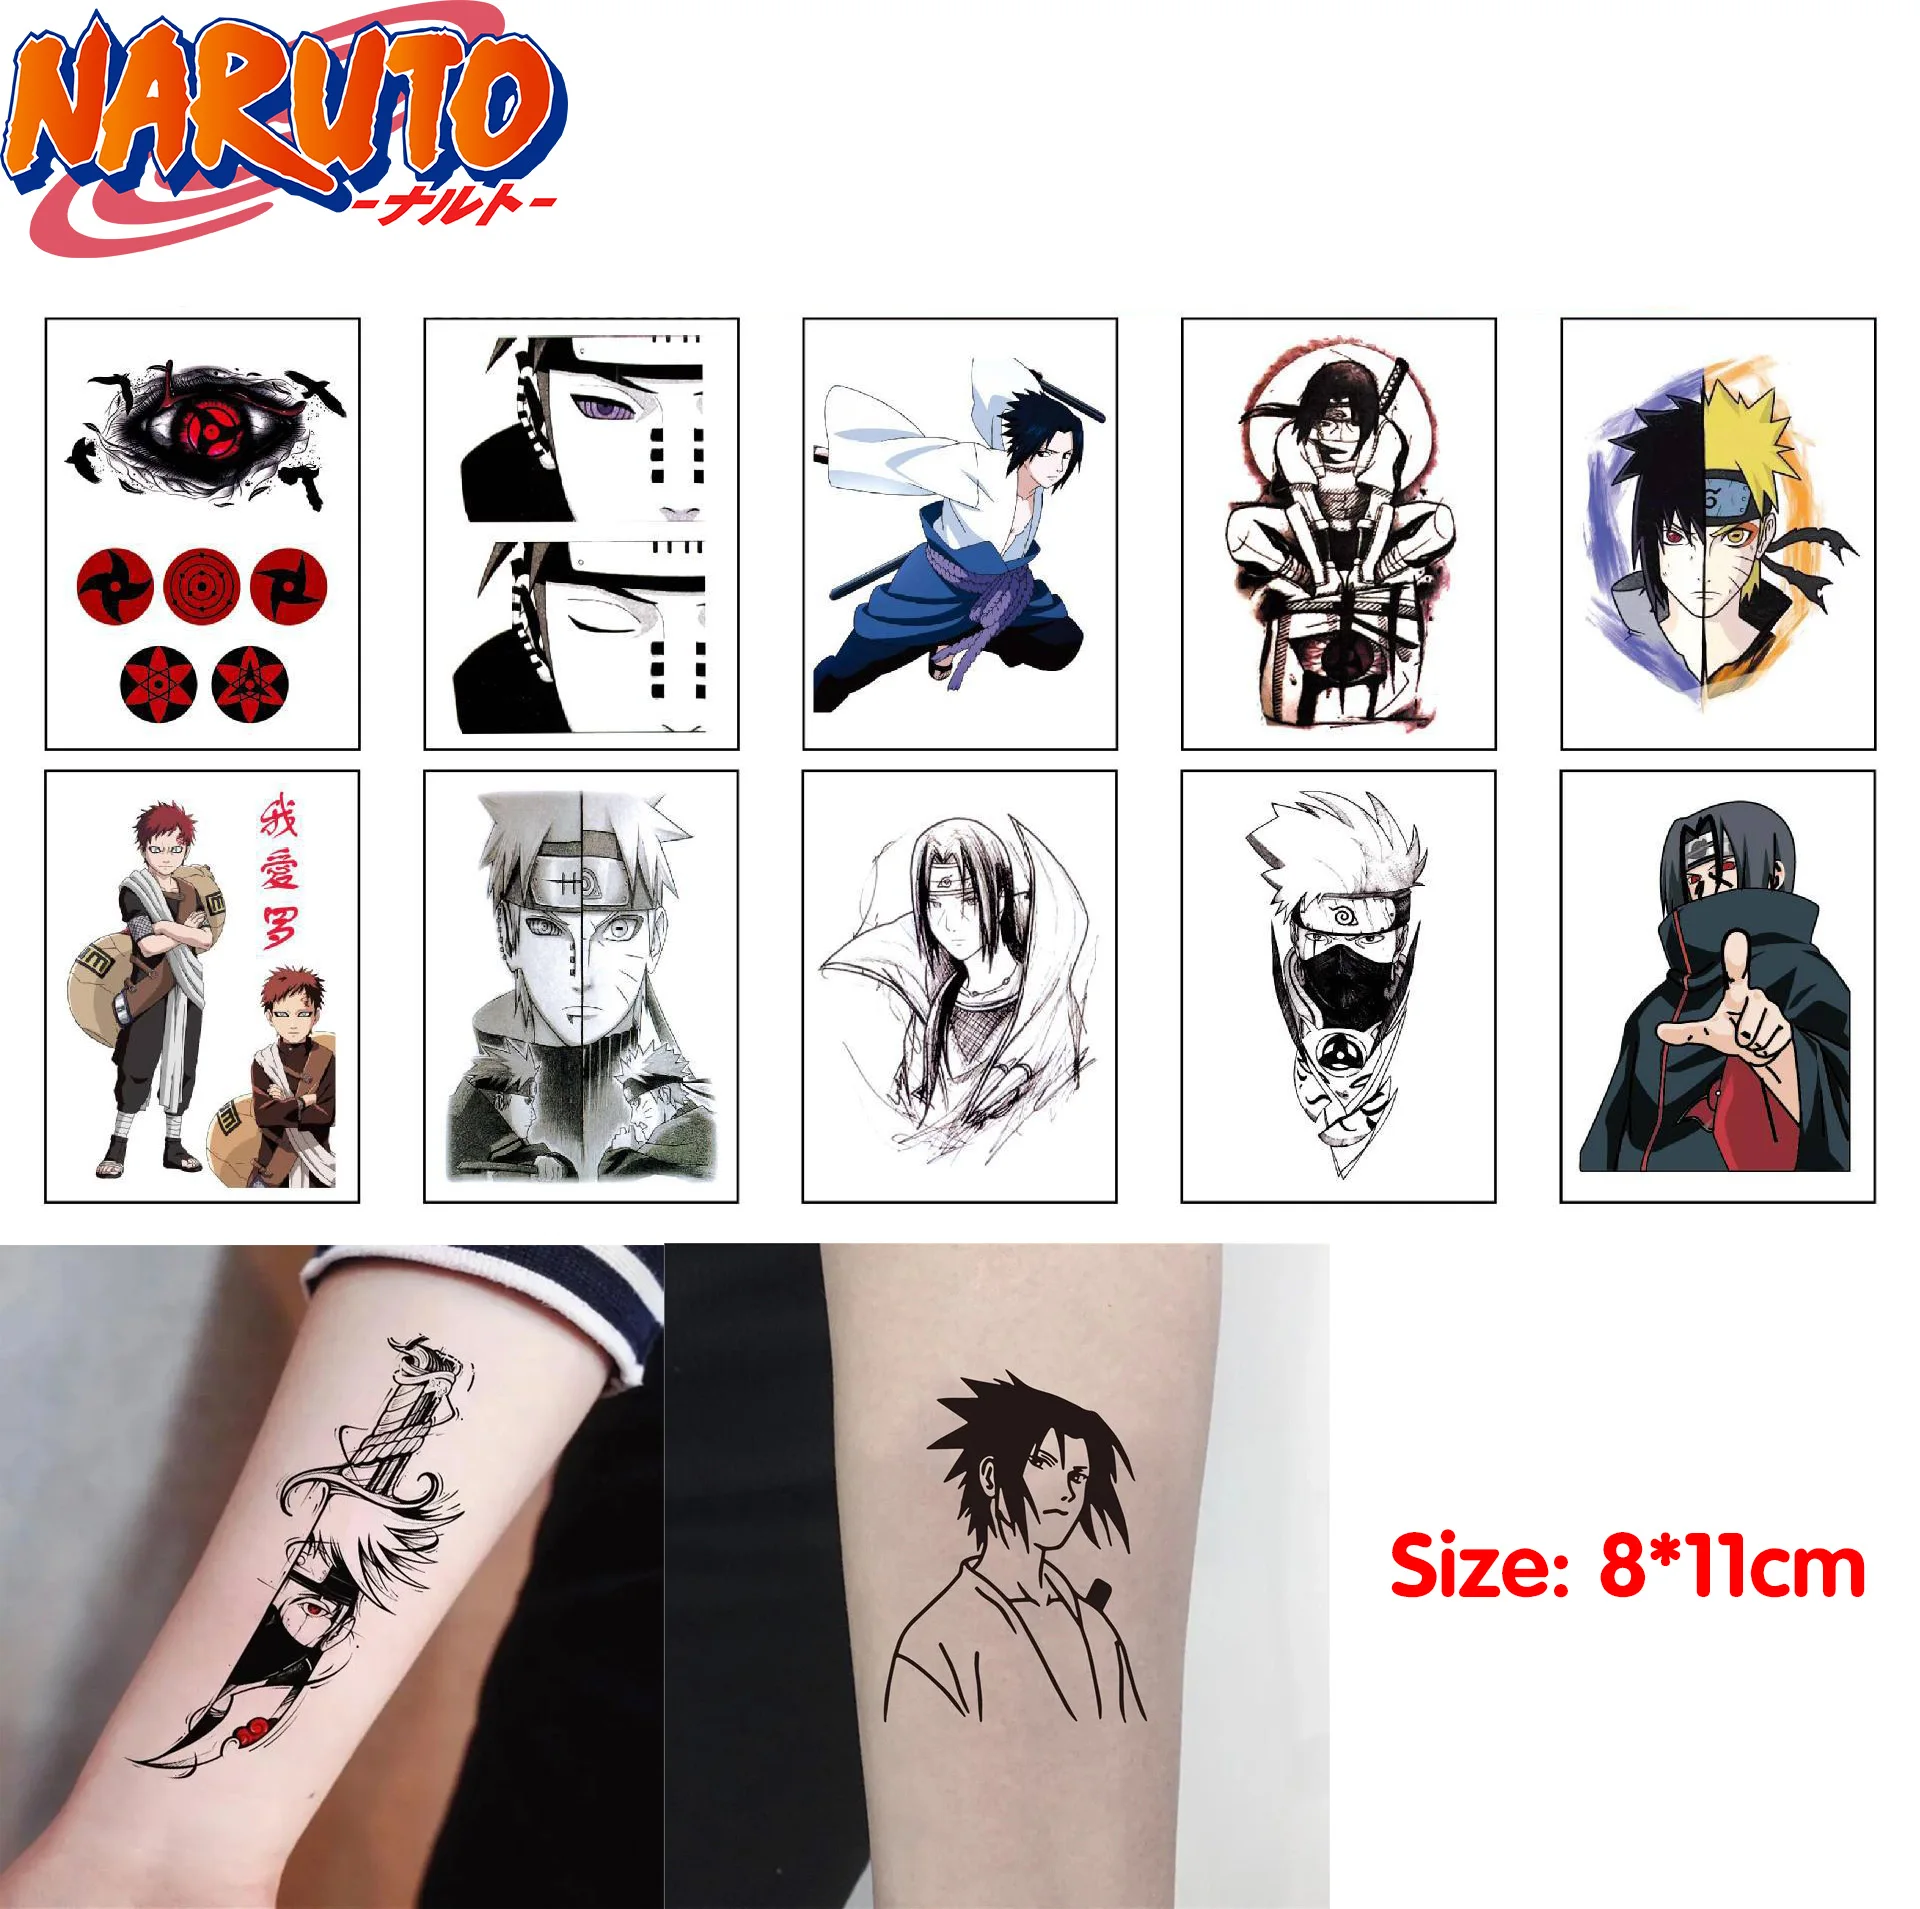 10 Tatuagens de Naruto